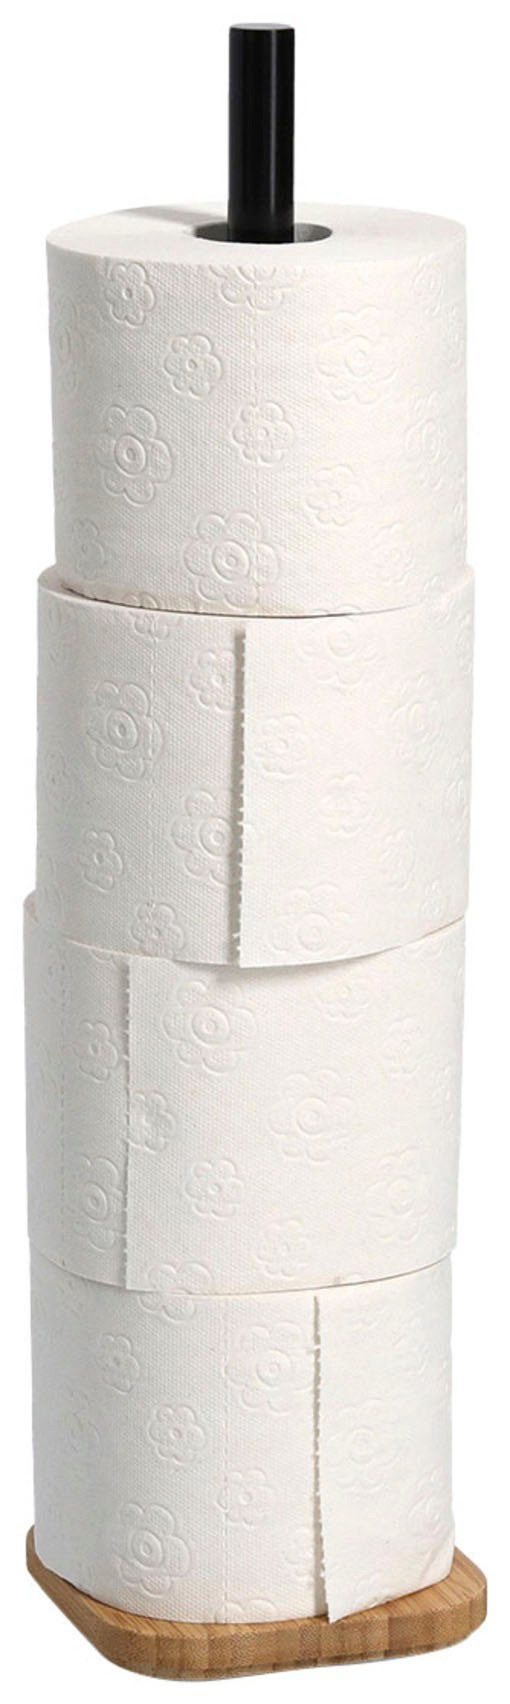 Toiletten-Ersatzrollenhalter, Zeller Bambus WC-Rollenhalter, Present